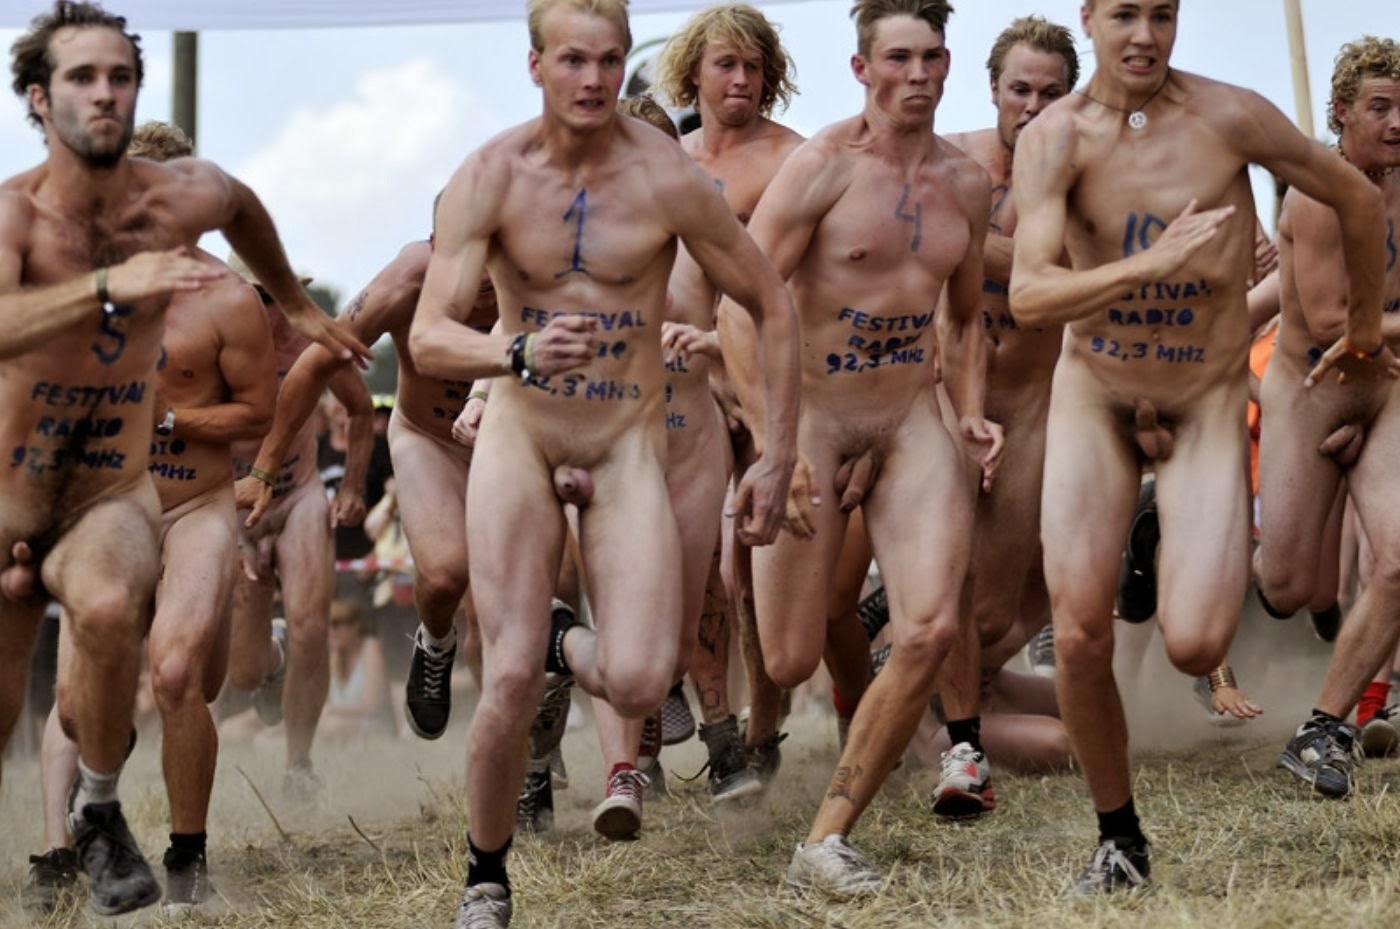 Nude men running